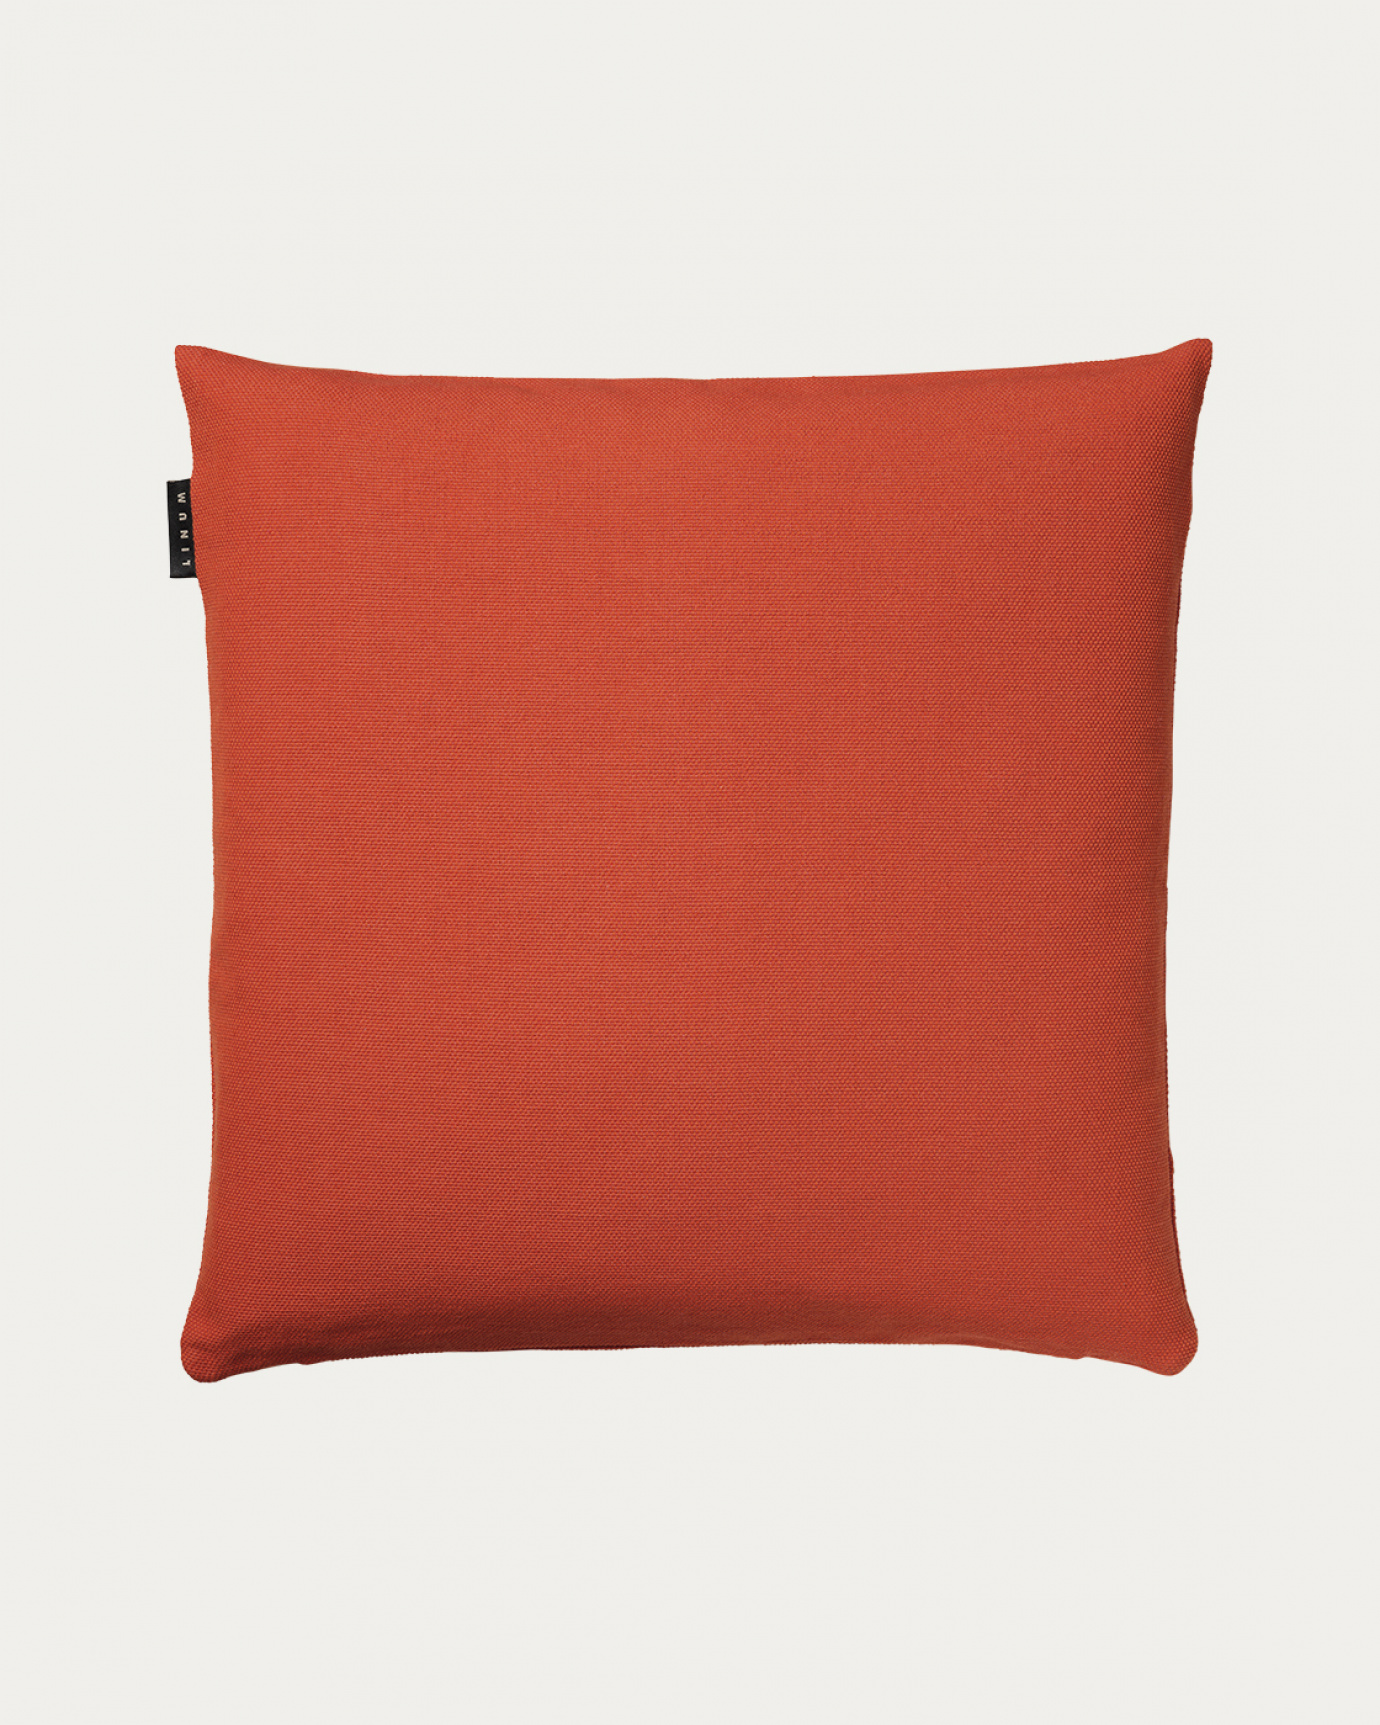 Image du produit housse de coussin PEPPER orange rouillé en coton doux de LINUM DESIGN. Facile à laver et durable pendant des générations. Taille 50 x 50 cm.